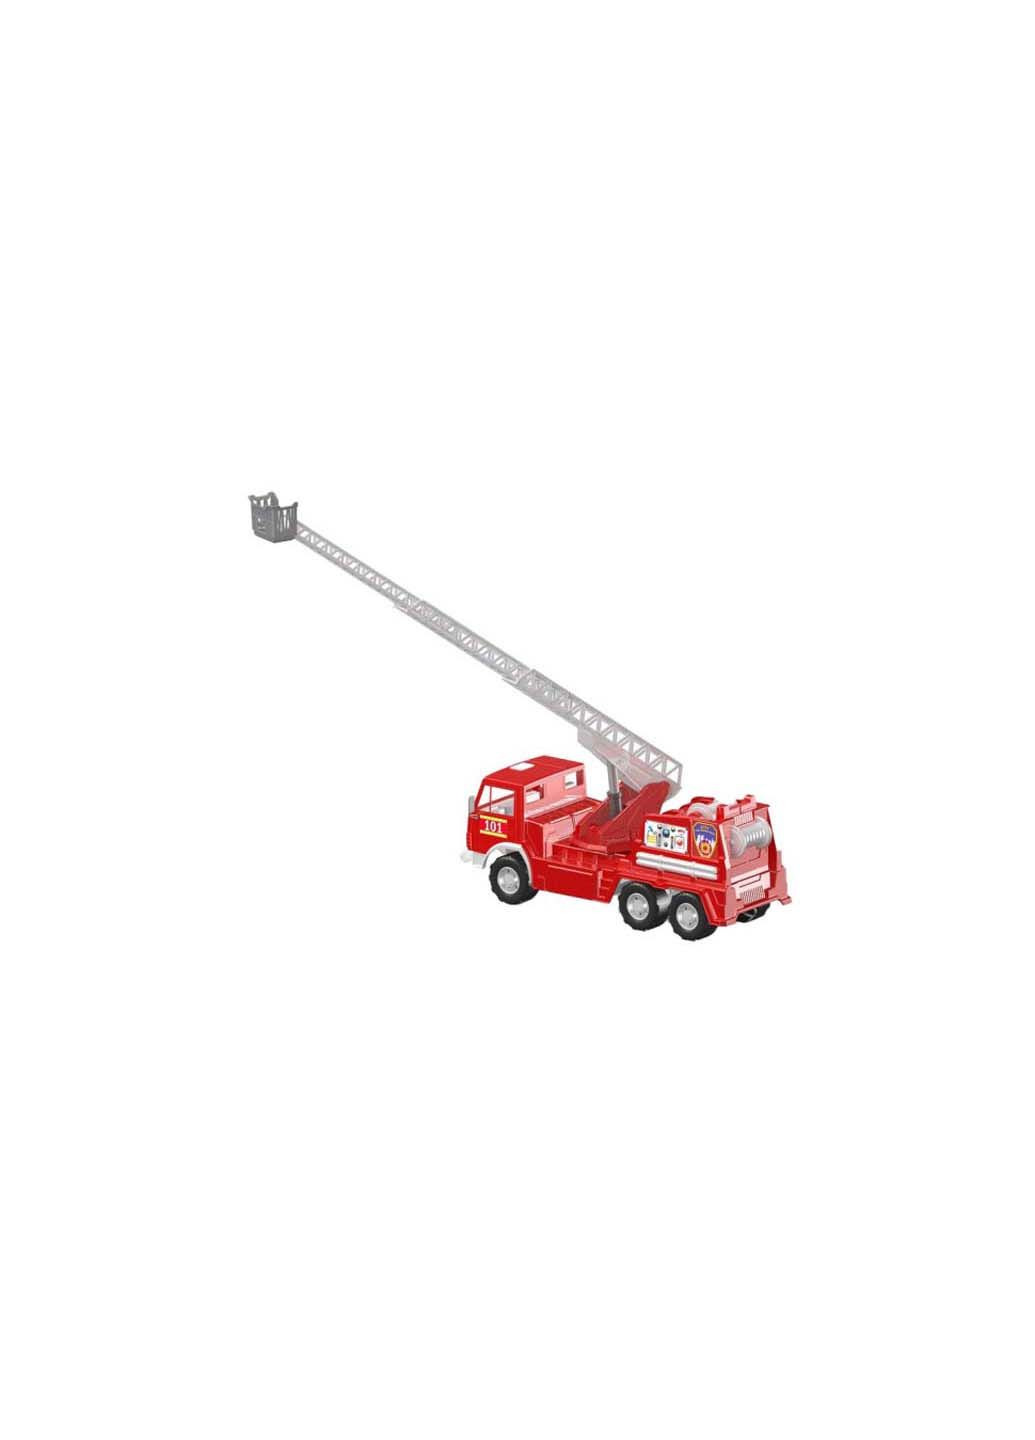 Дитяча іграшка Пожежний автомобіль Х3 34OR із підйомним краном Orion (293939718)